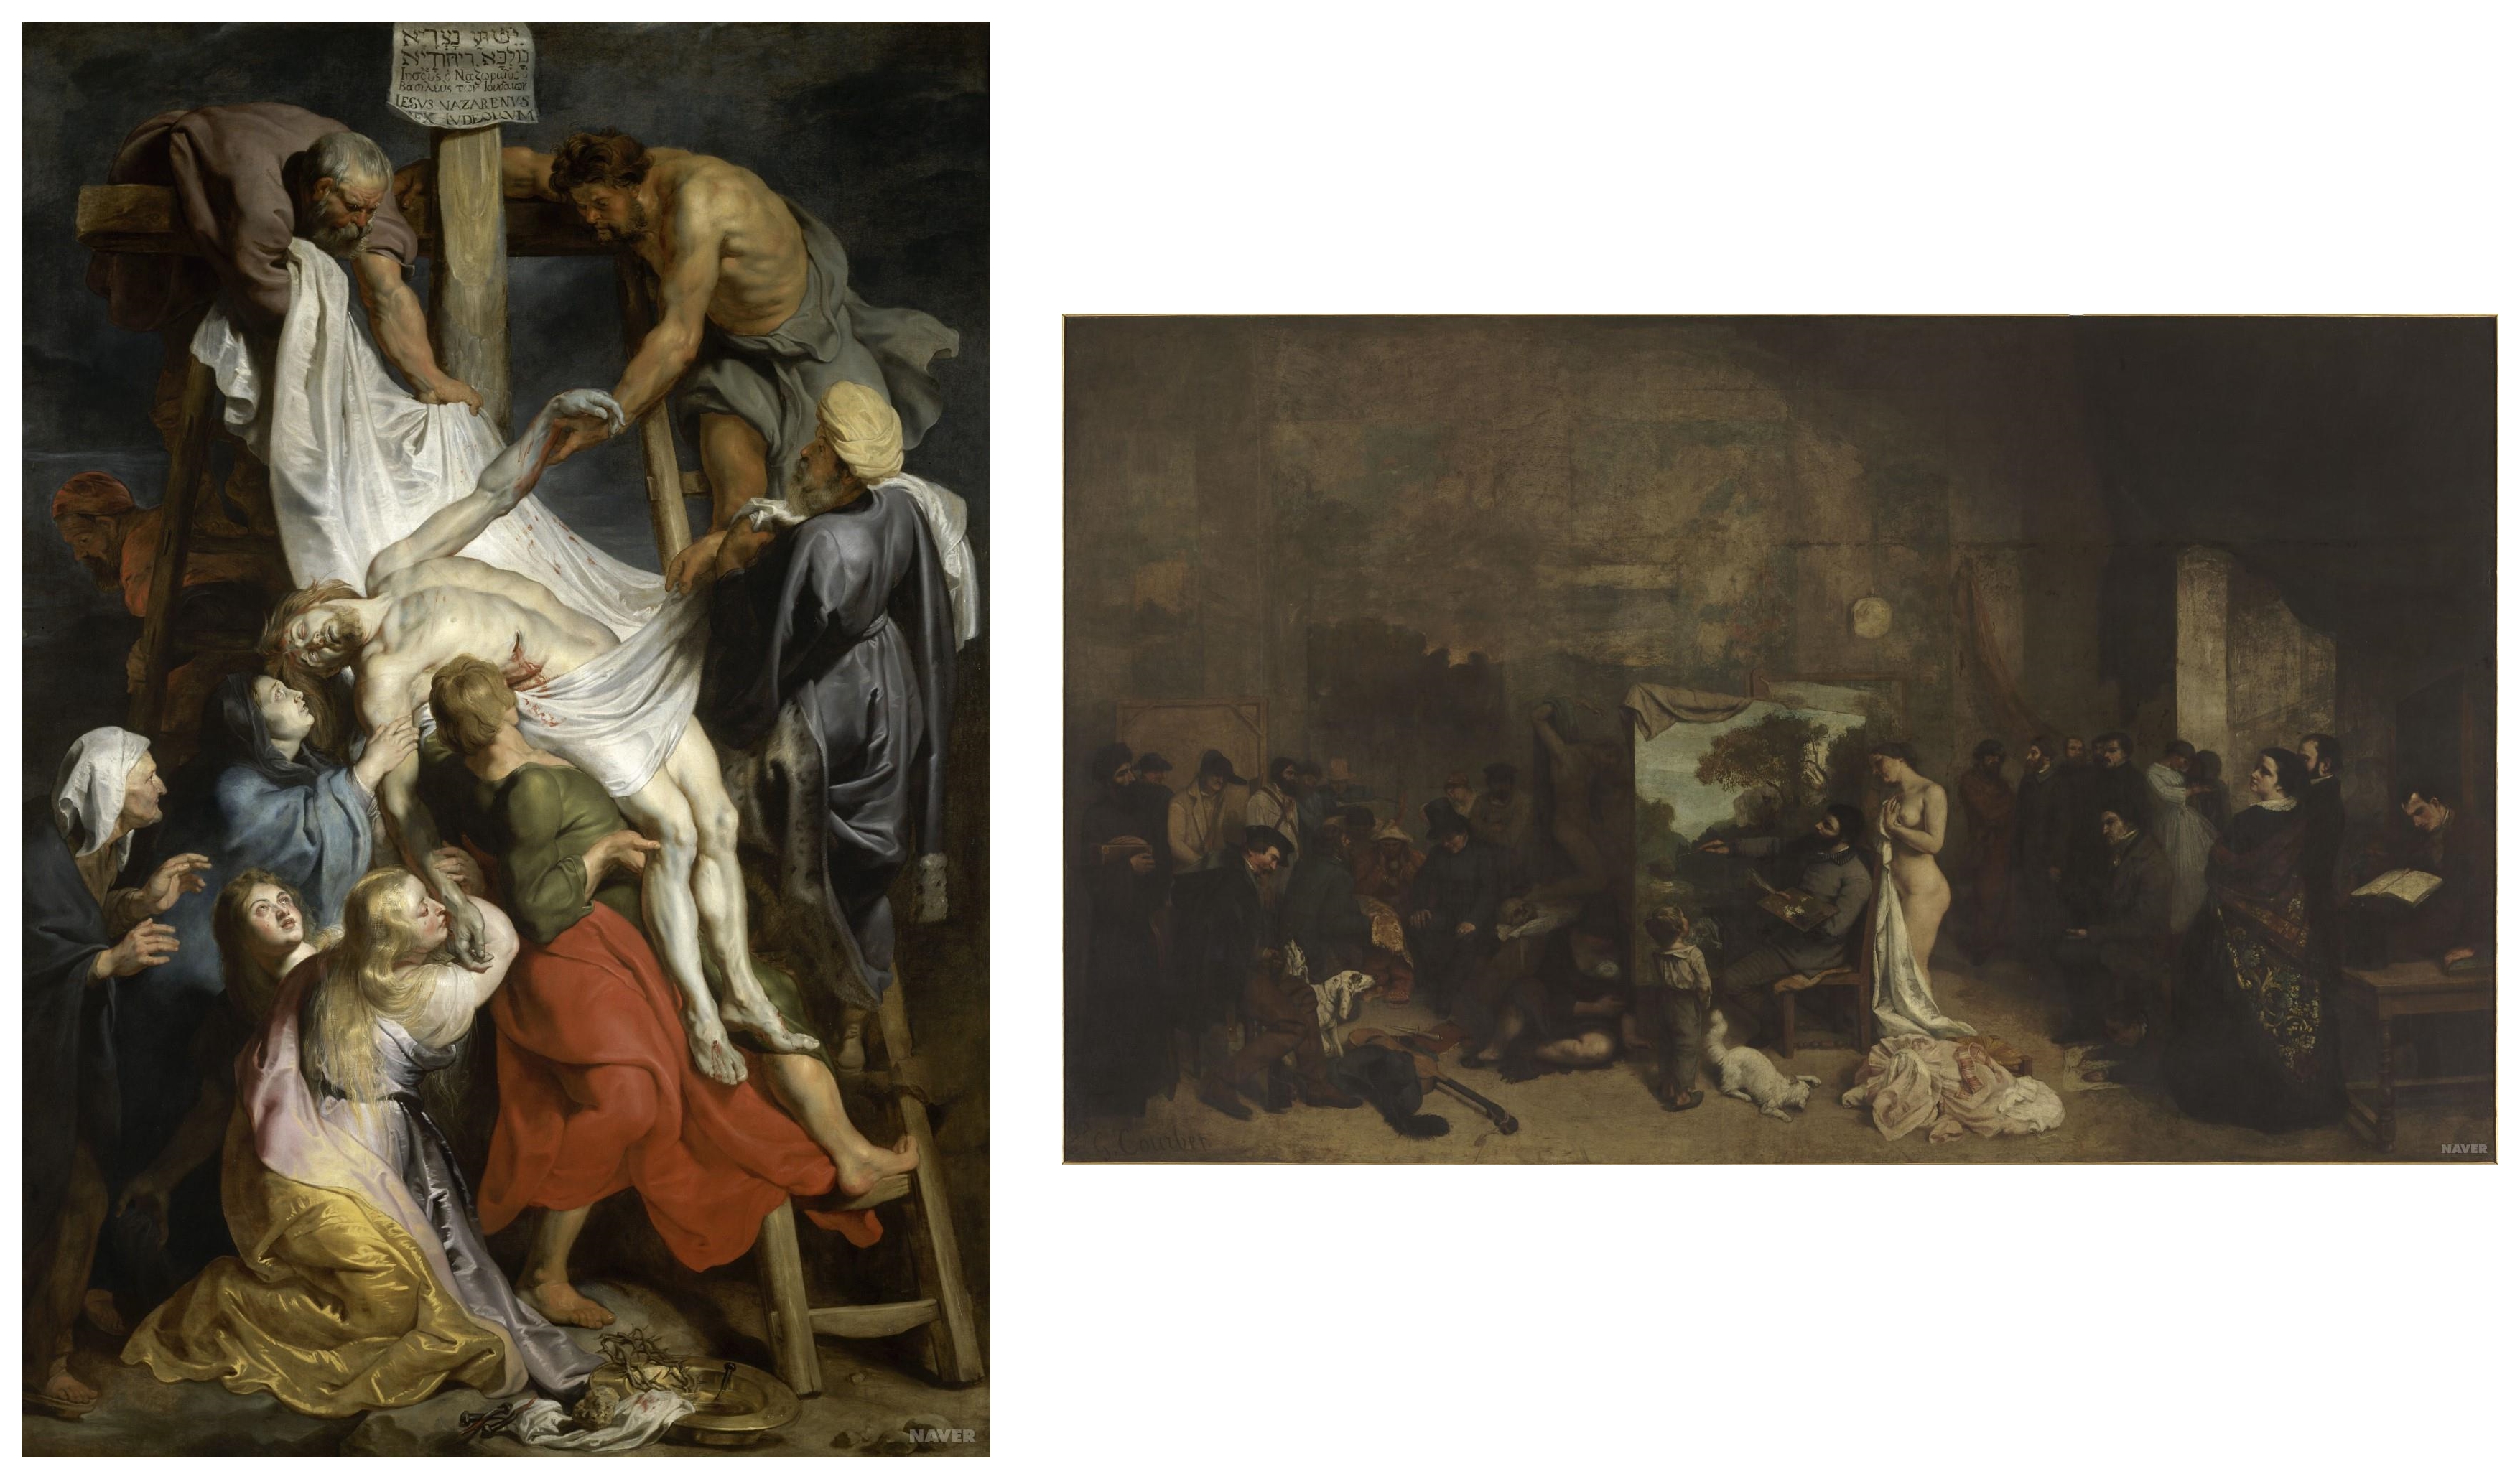 루벤스(1577~1640) 십자가에서 내림(Descent from the Cross) (출처: 위키백과)/ 쿠르베(1819~1877) 화가의 아틀리에 (출처: 위키백과)